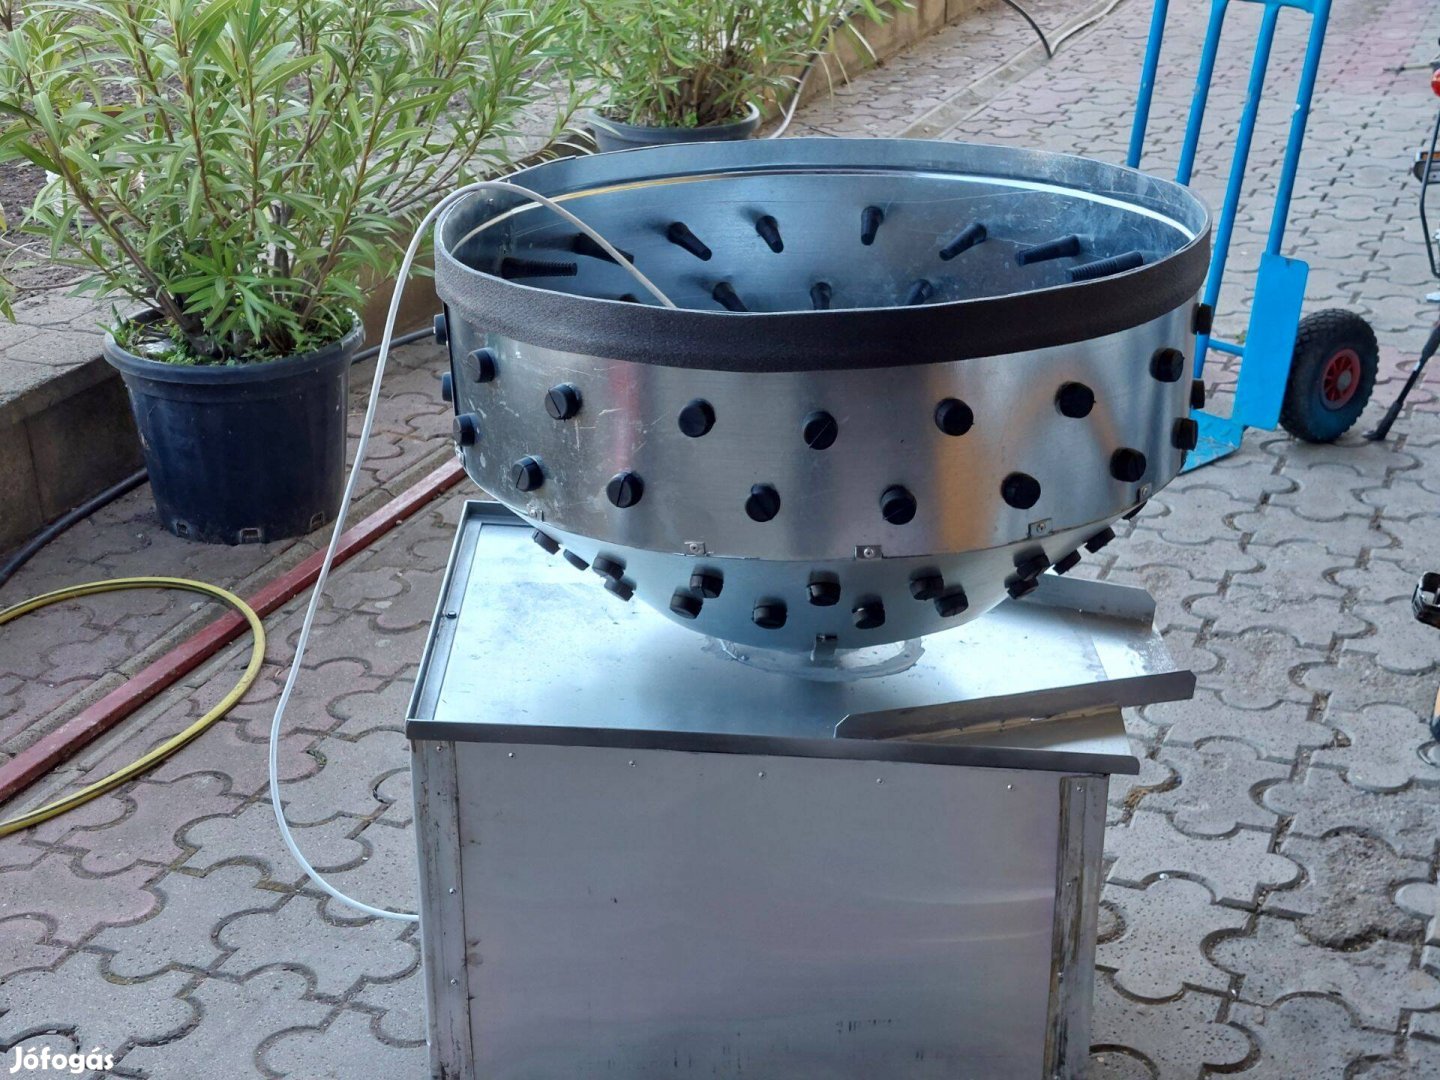 Baromfi kopasztógép - alapgép eladó (kopasztó koppasztó gép csirke)